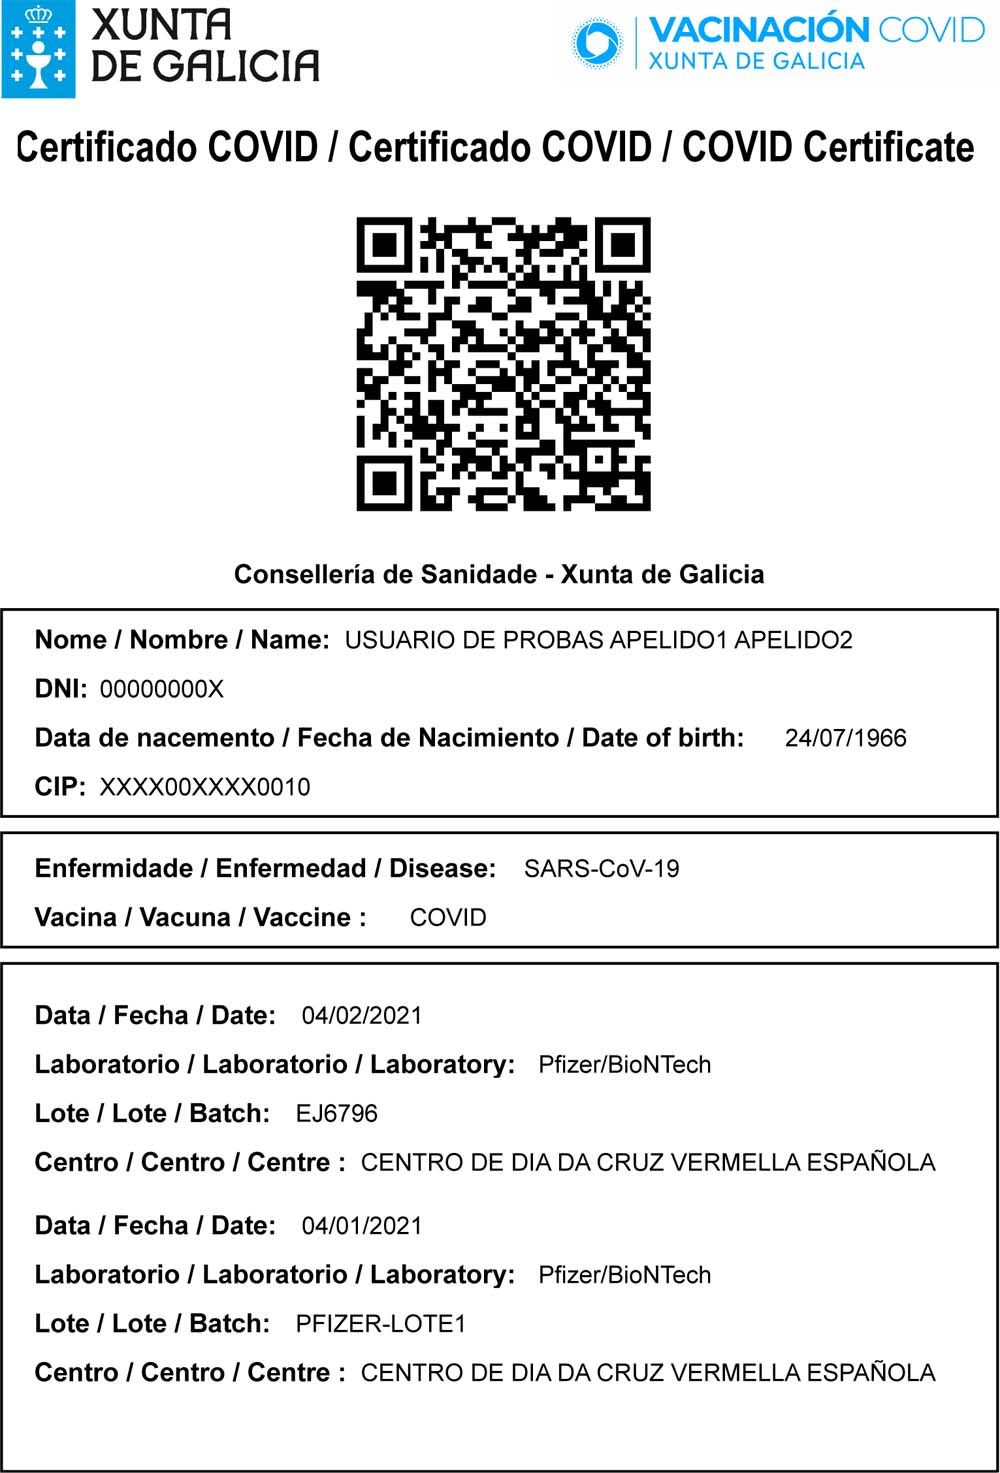 Modelo del certificado de vacunación COVID en Galicia.